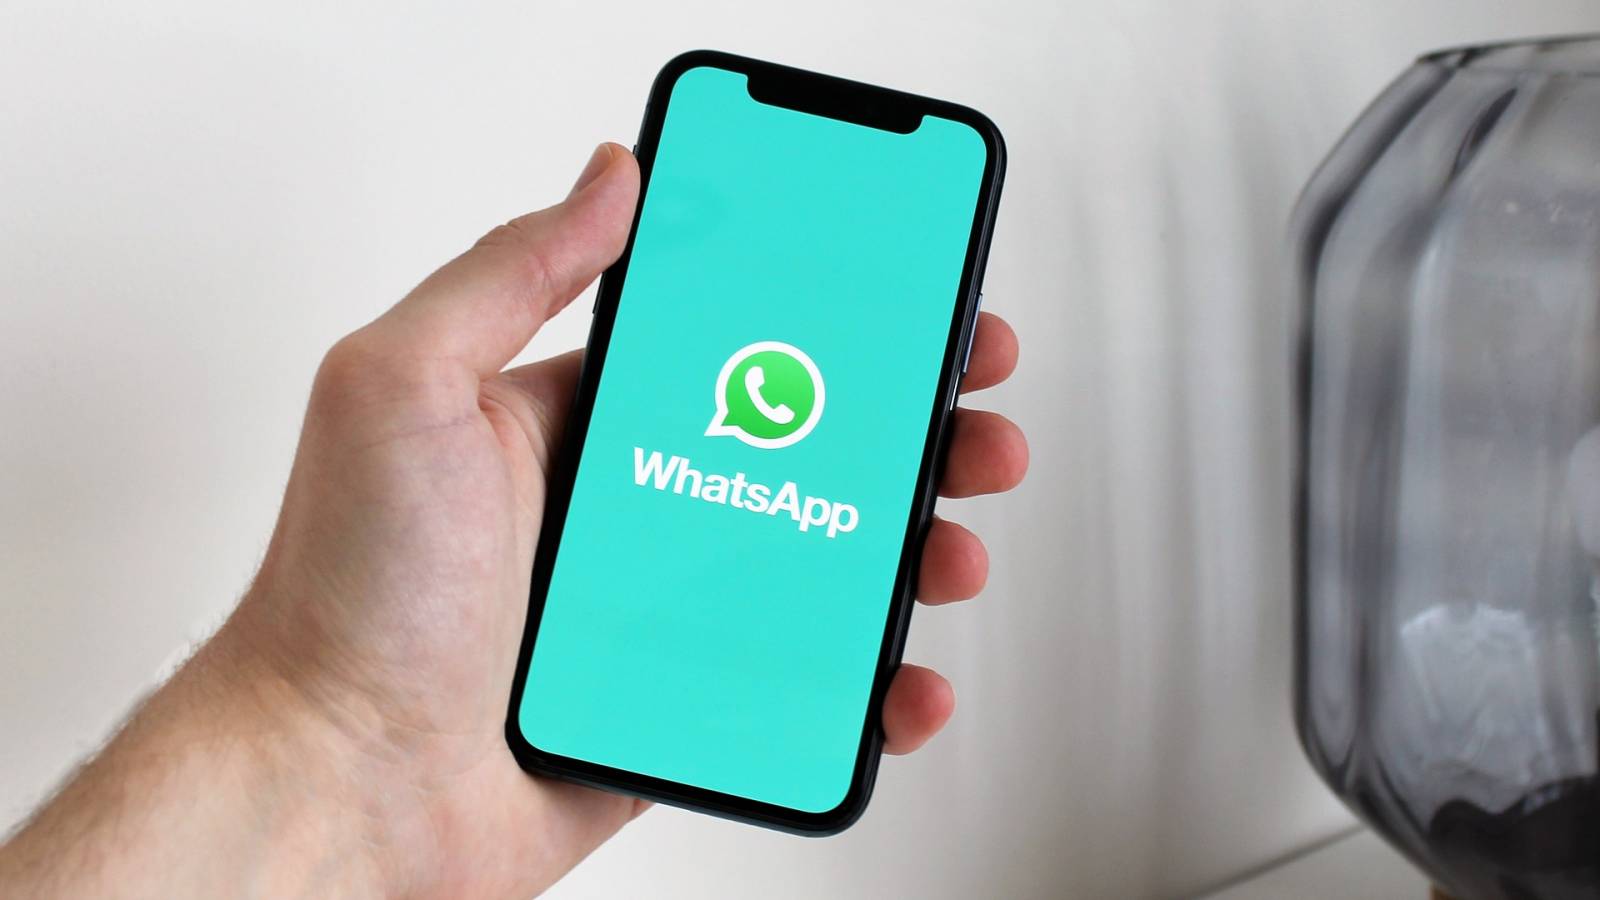 L'annonce officielle de WhatsApp montre l'avenir de l'application pour des milliards de personnes